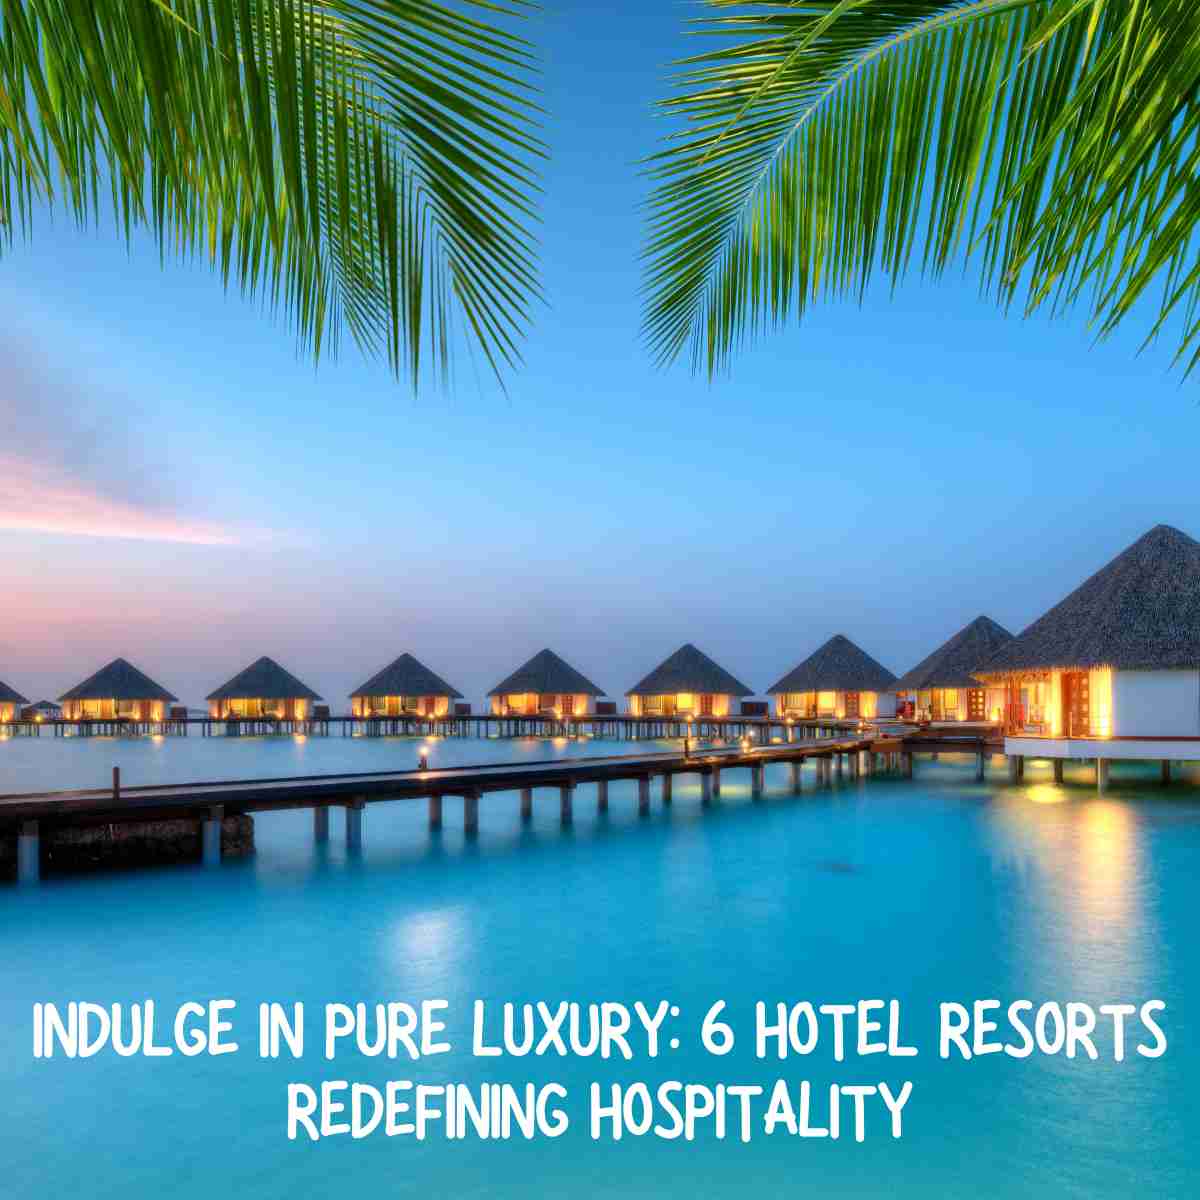 Hotel Resorts Redefining Hospitality